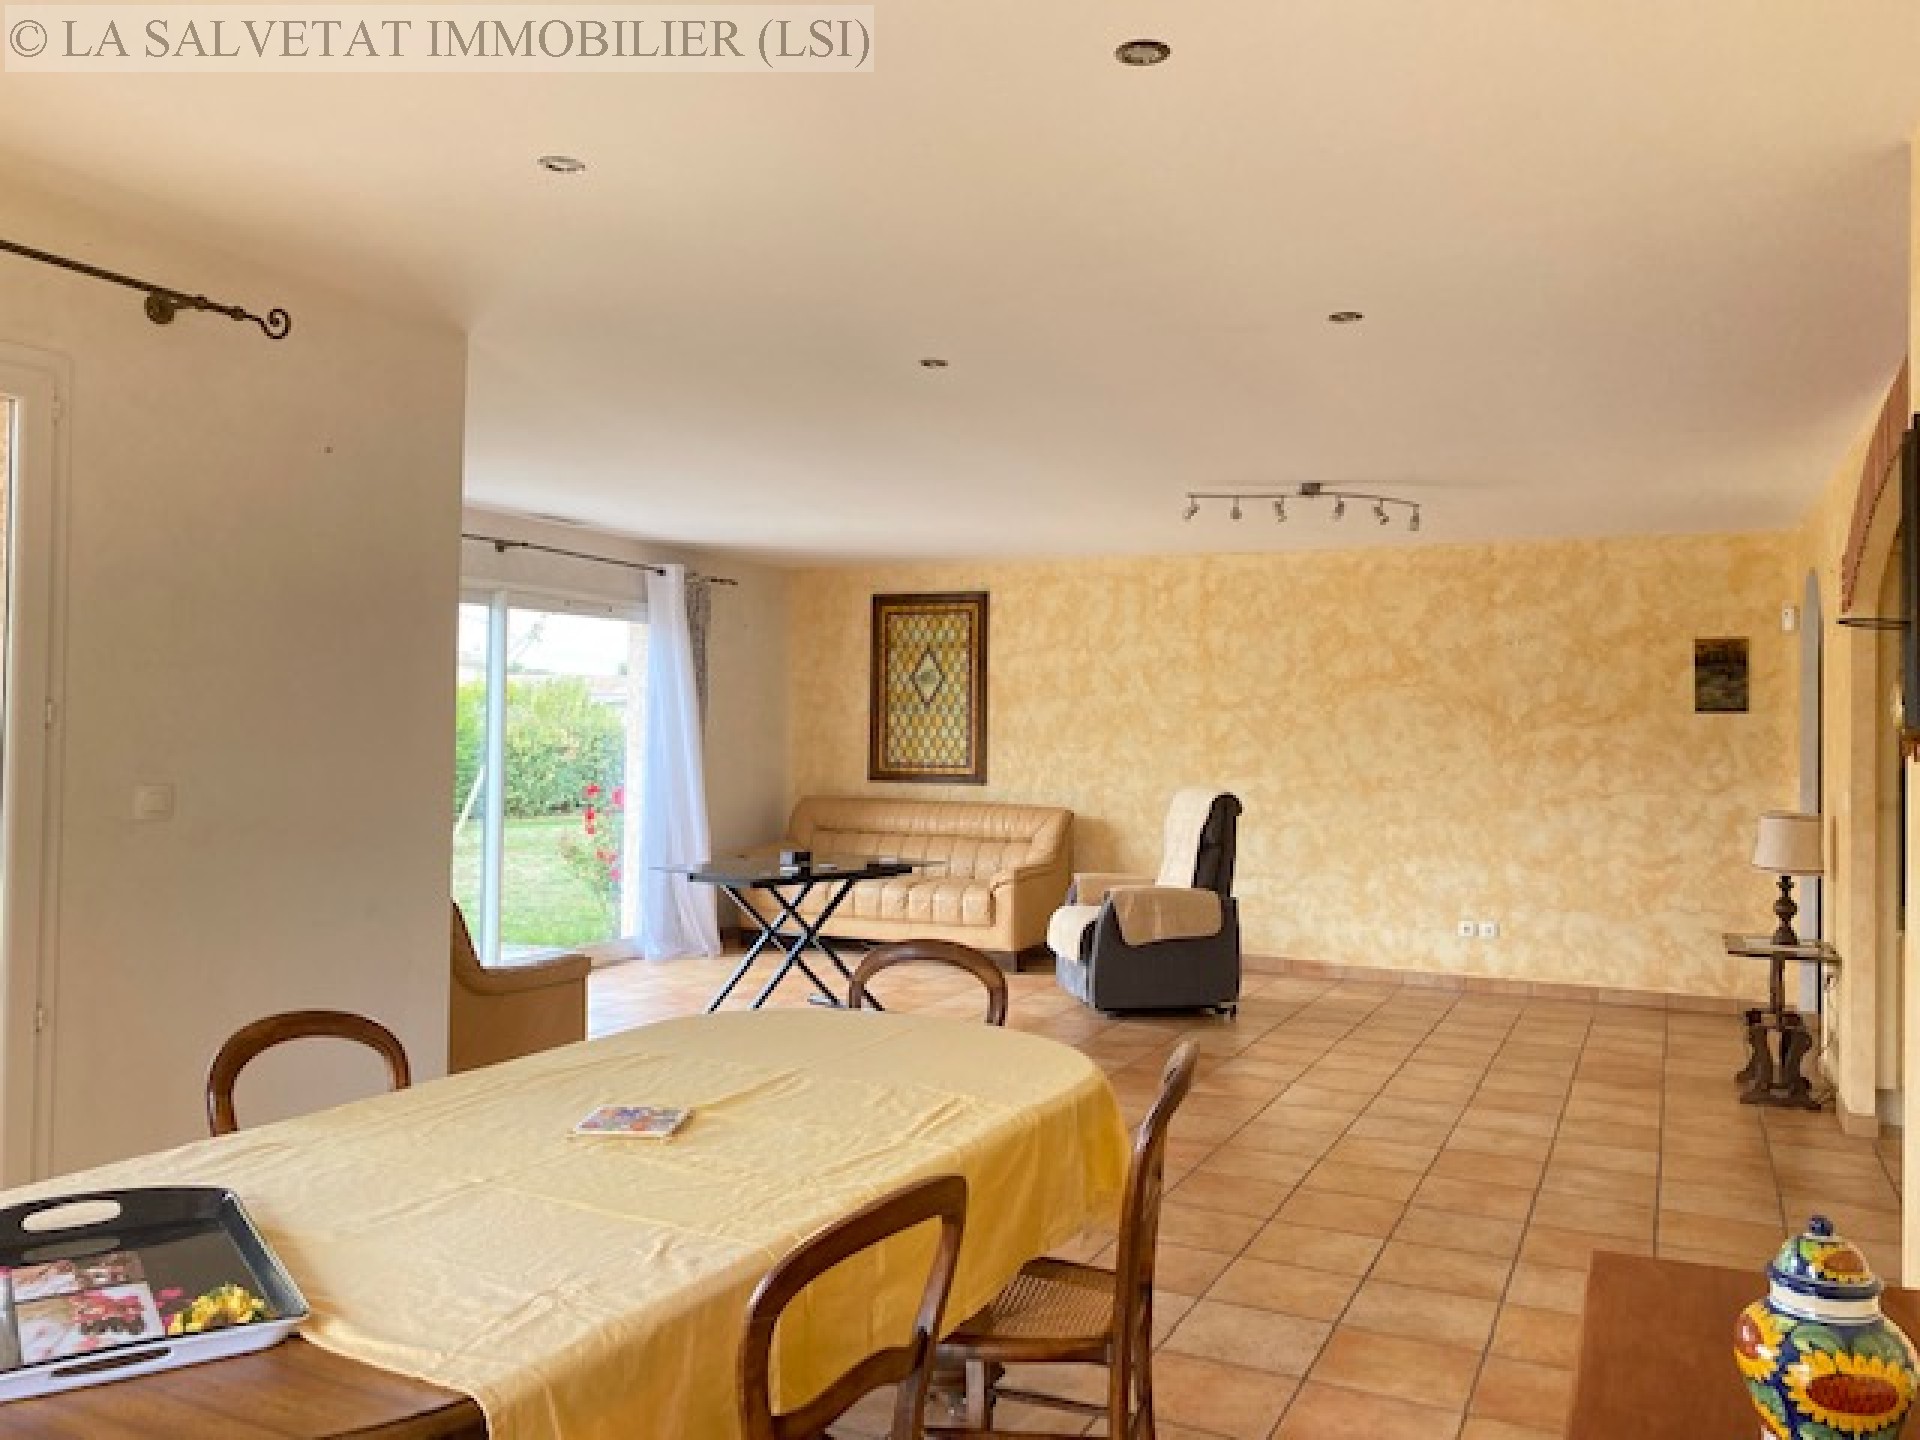 Vente maison-villa - FONTENILLES<br>140 m², 5 pièces